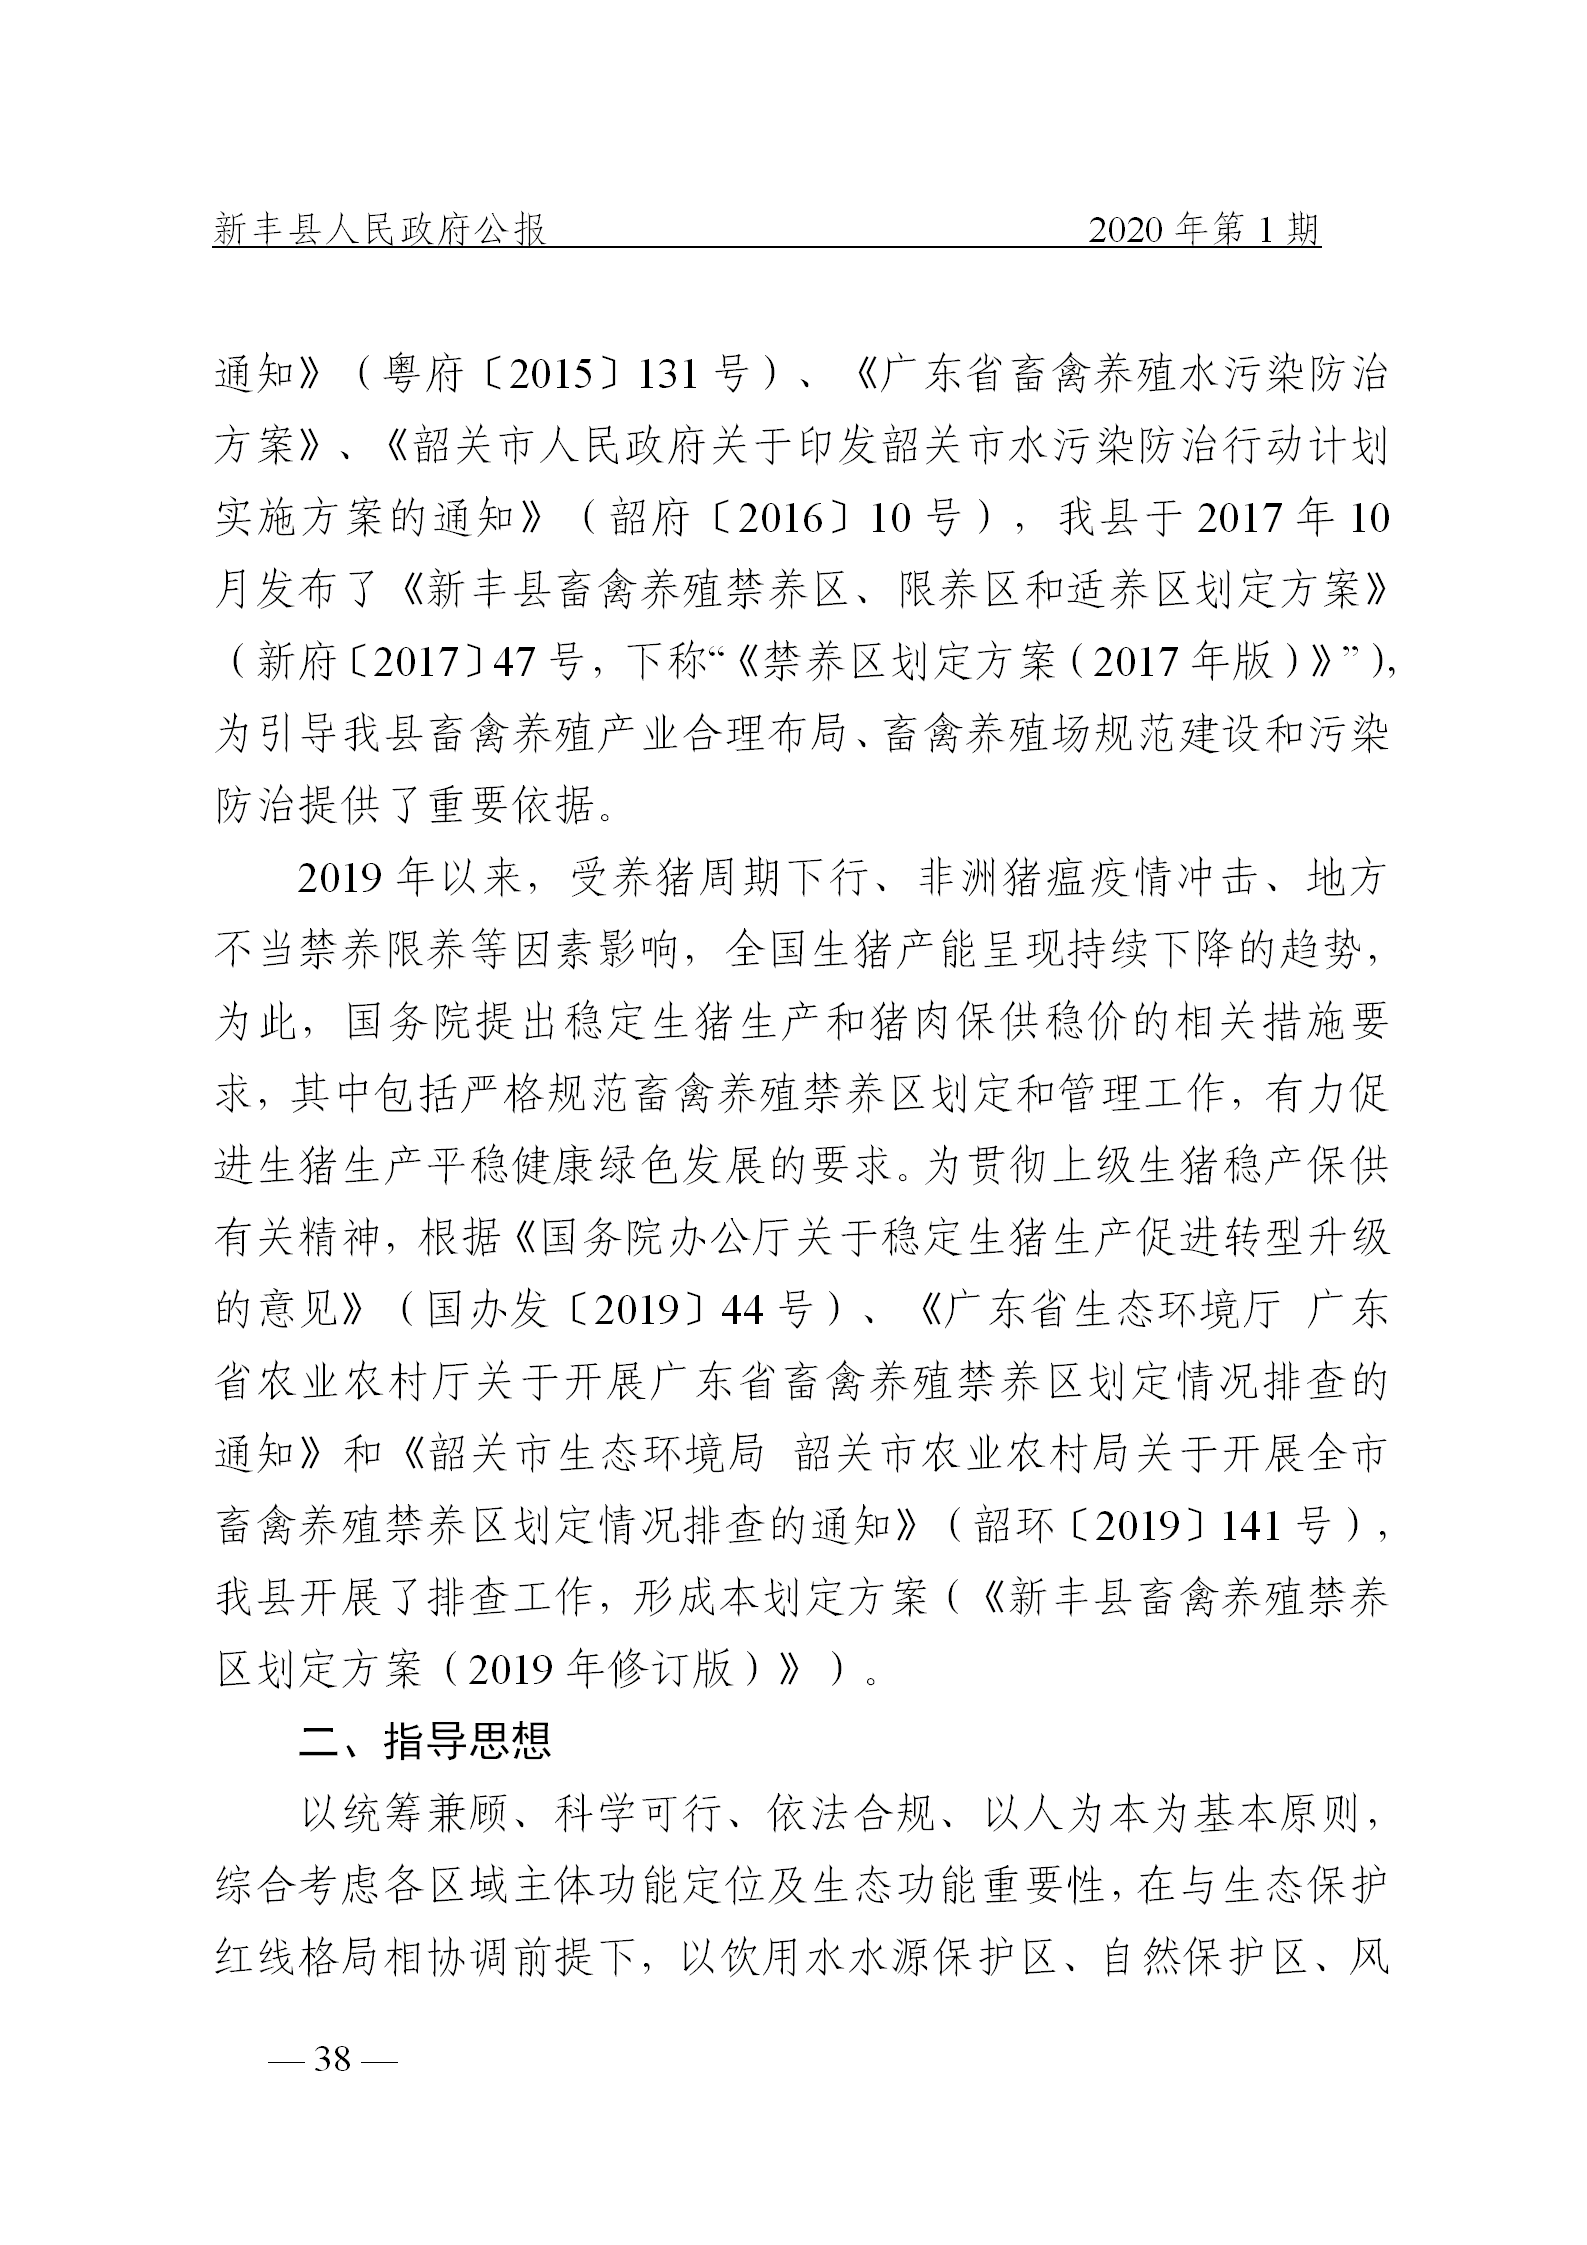 《新丰县人民政府公报》2020年第1期(1)_38.png